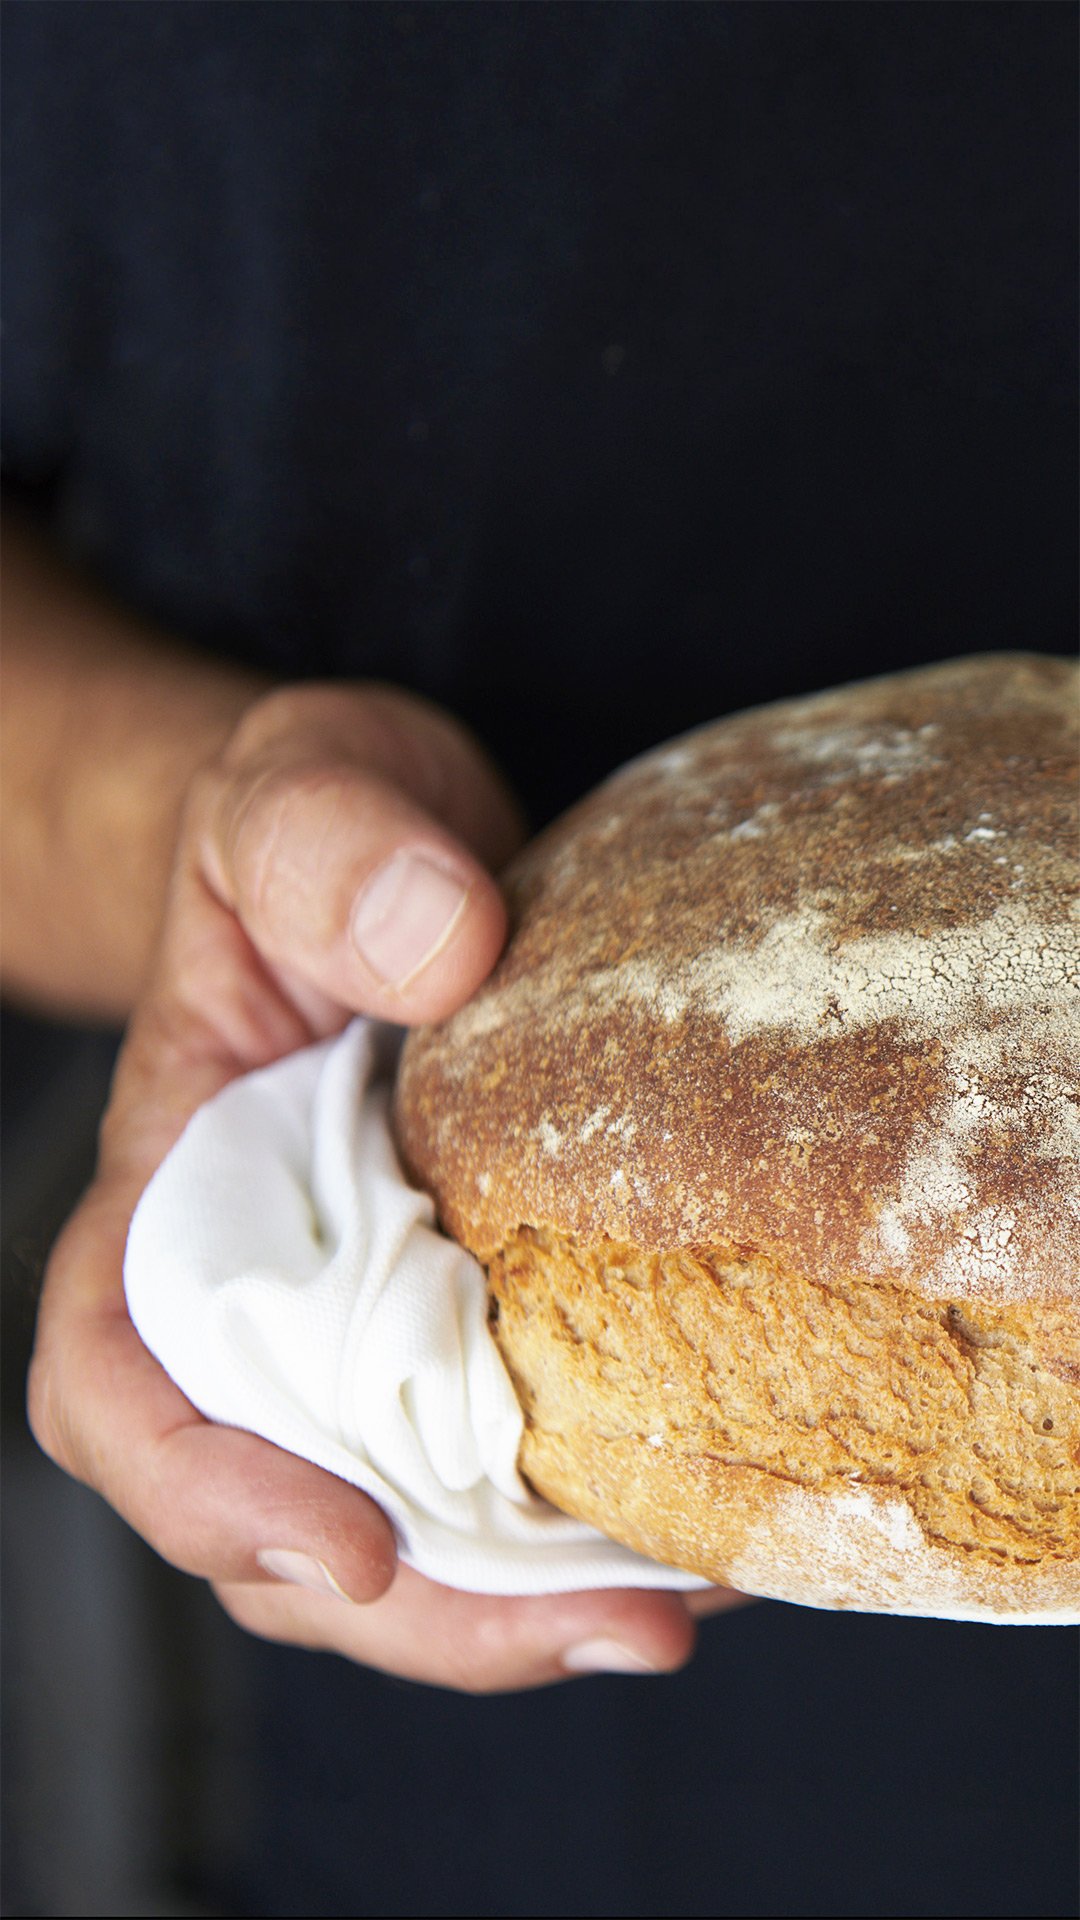 Ein frisch gebackenes Brot wird mit zwei Händen gehalten